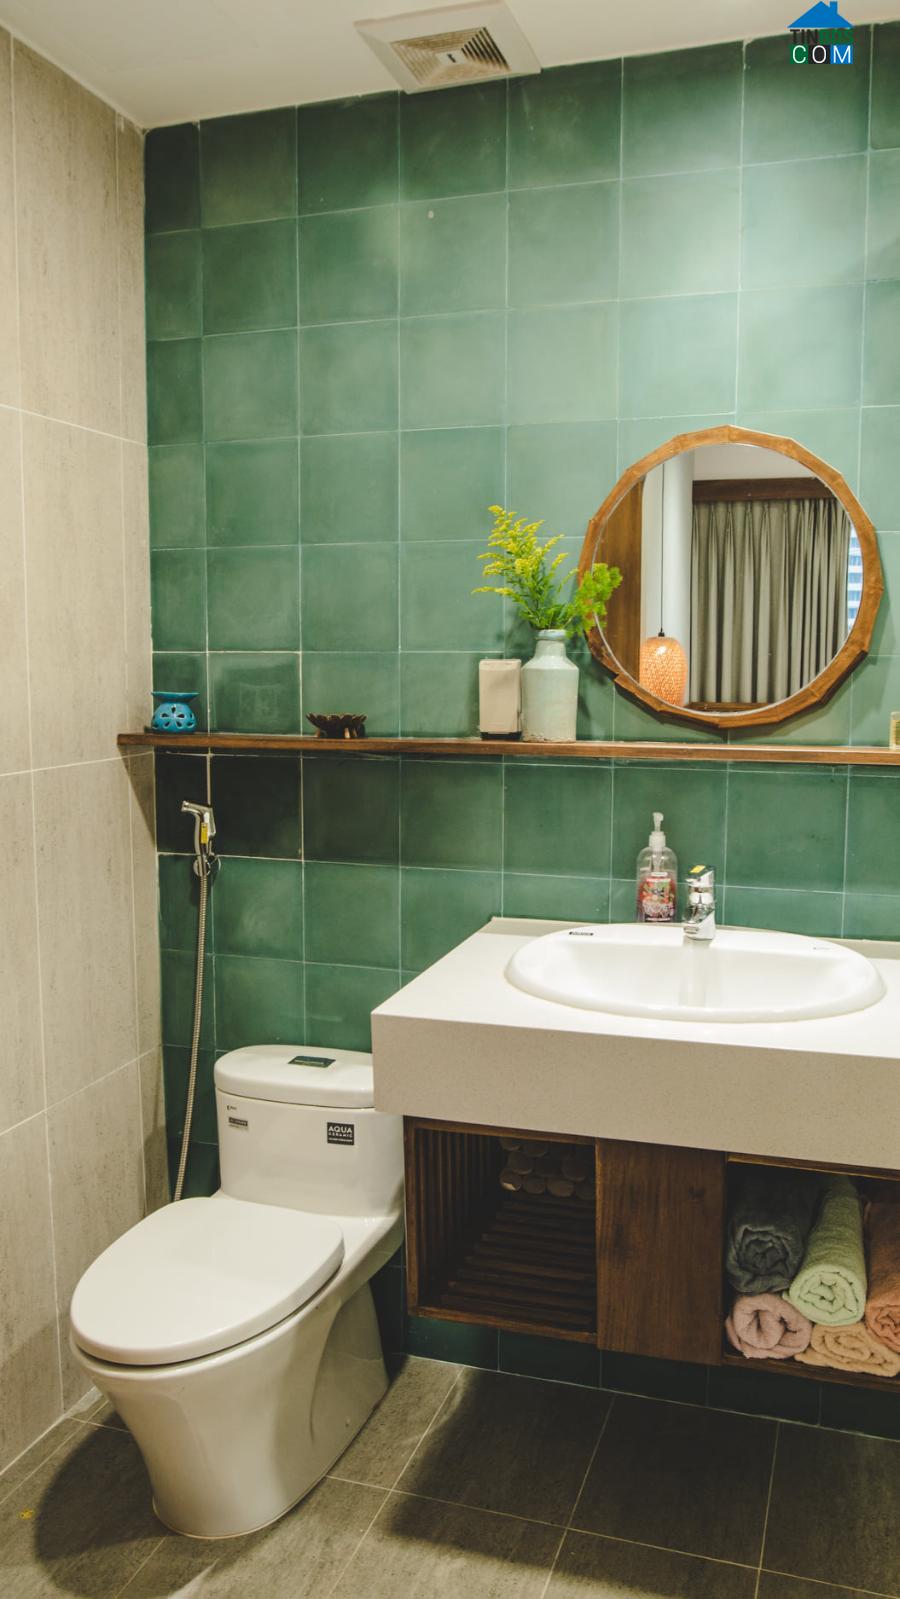 Phòng vệ sinh sử dụng gạch ốp tường tông xanh mát mắt.